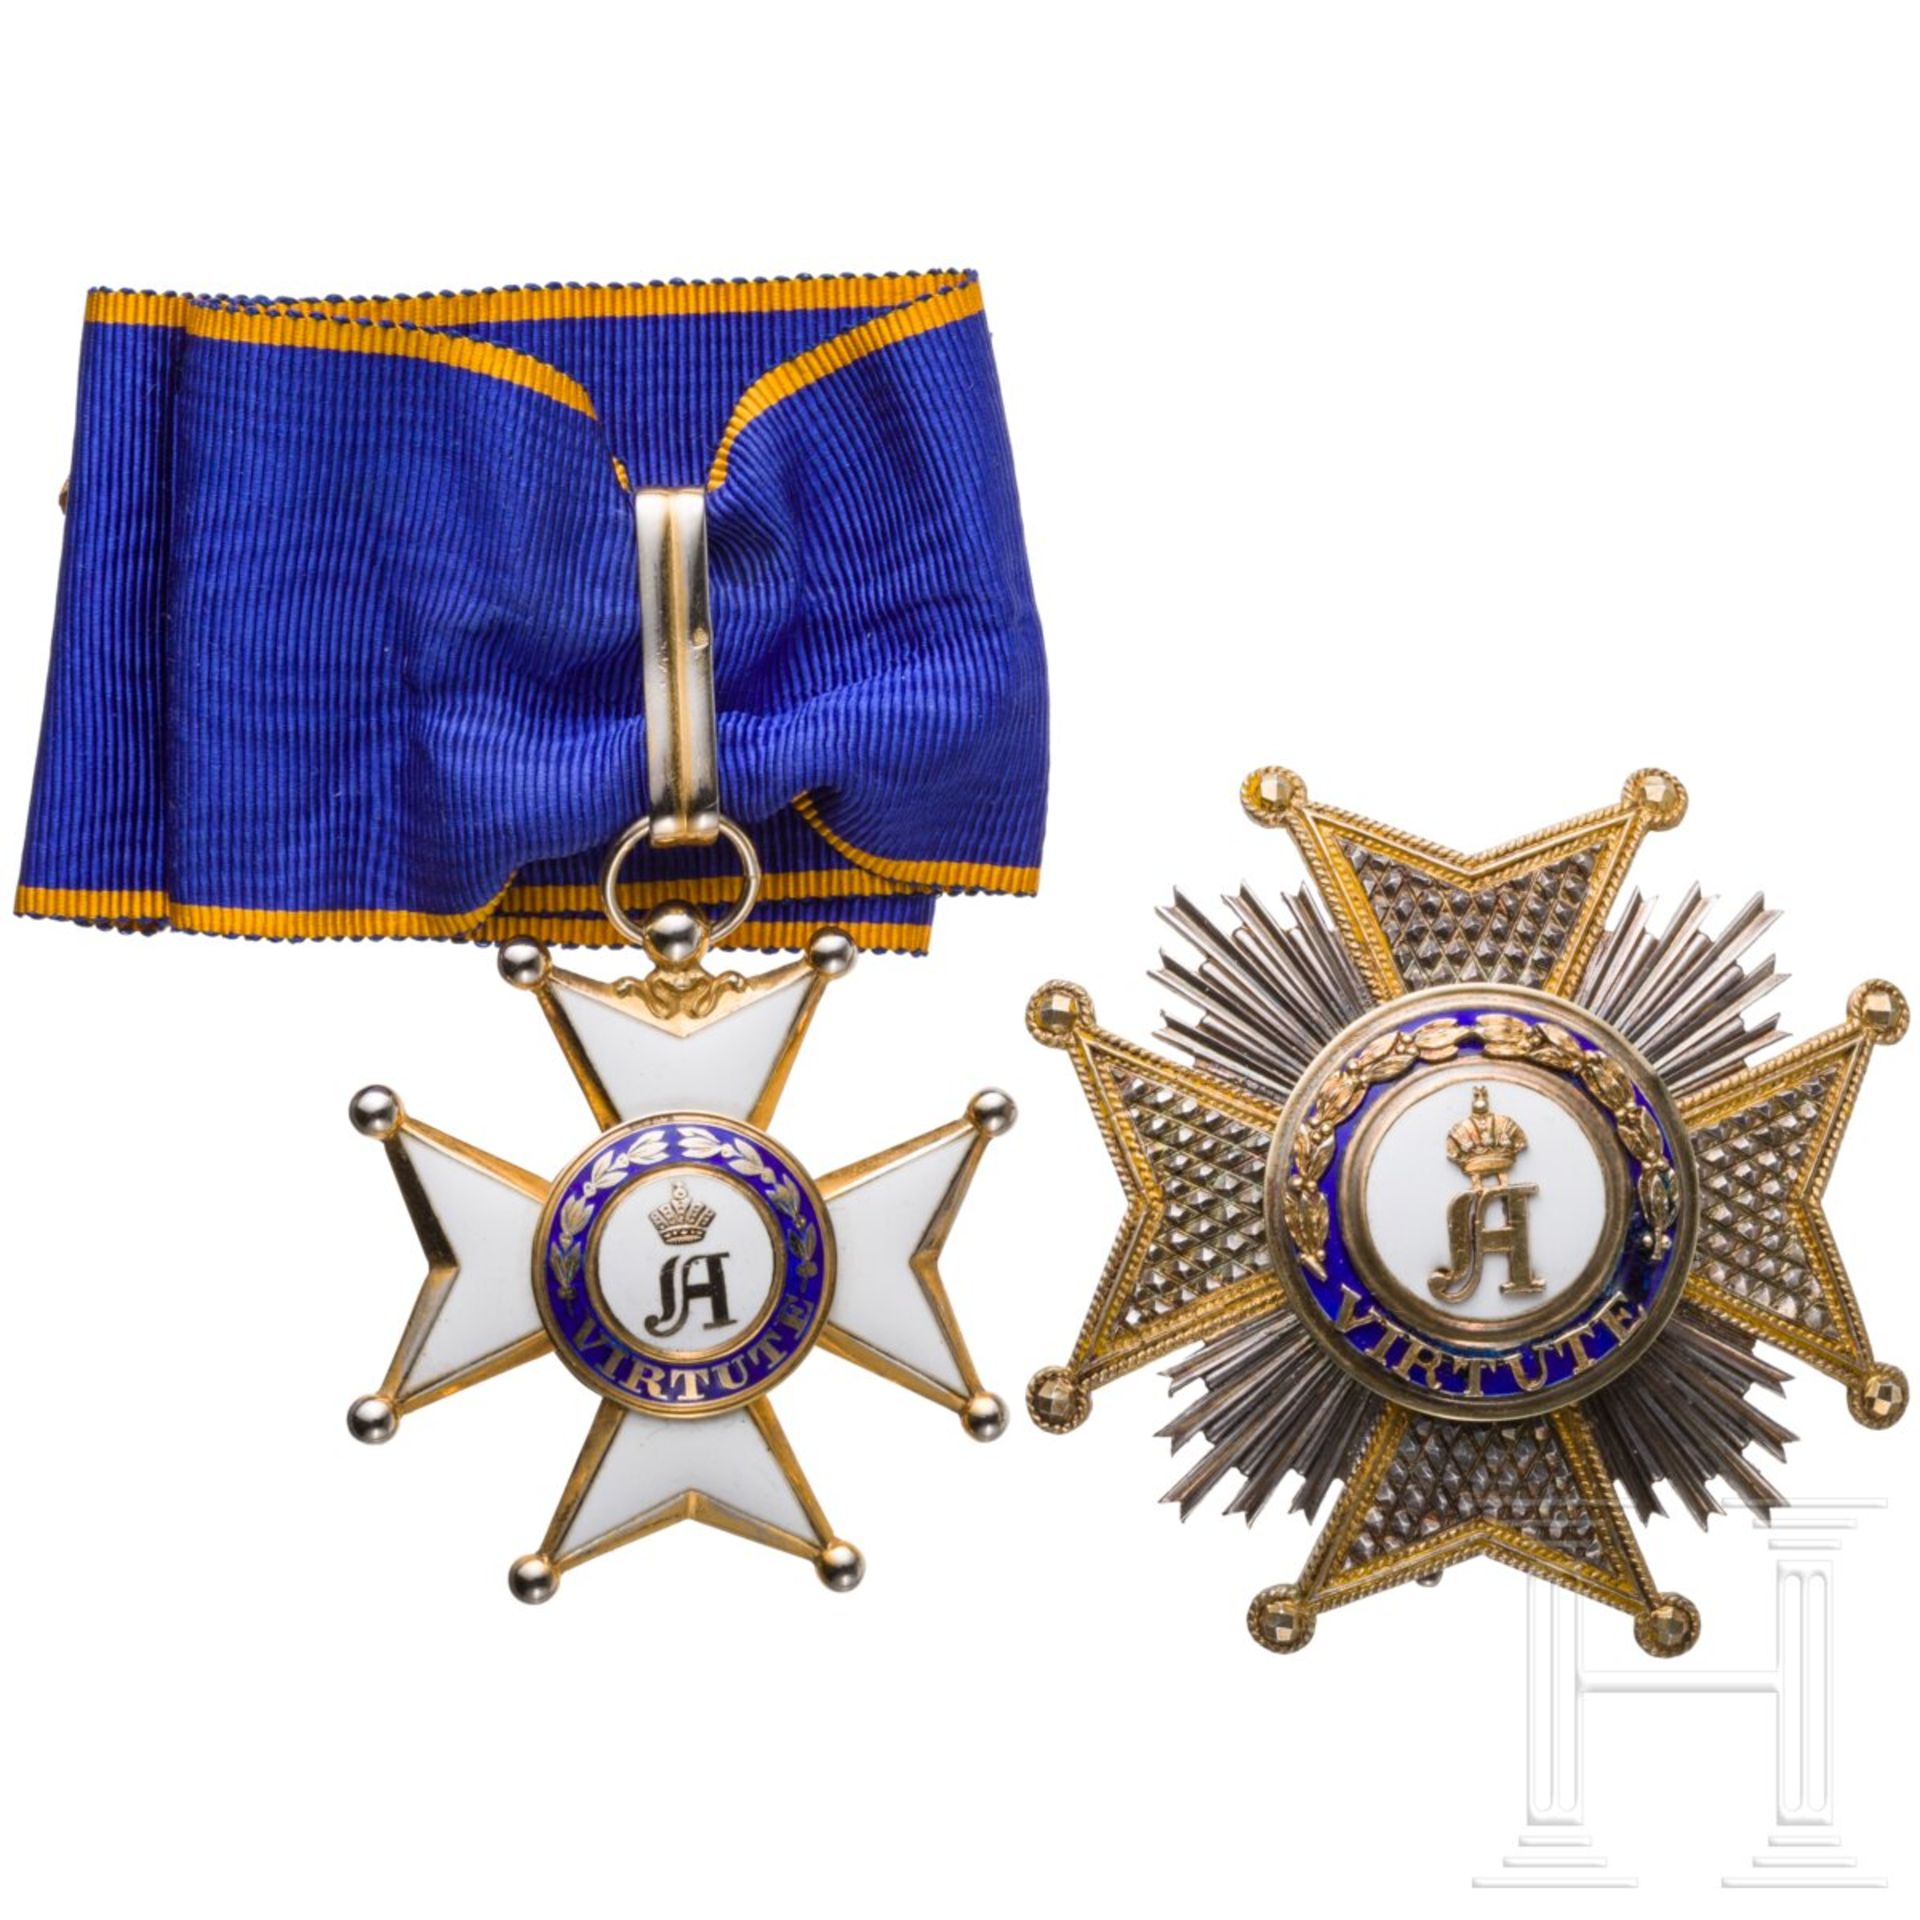 Militär- und Zivildienst-Orden Adolphs von Nassau - Großoffiziersset, Luxemburg, 20. Jhdt. - Image 2 of 6